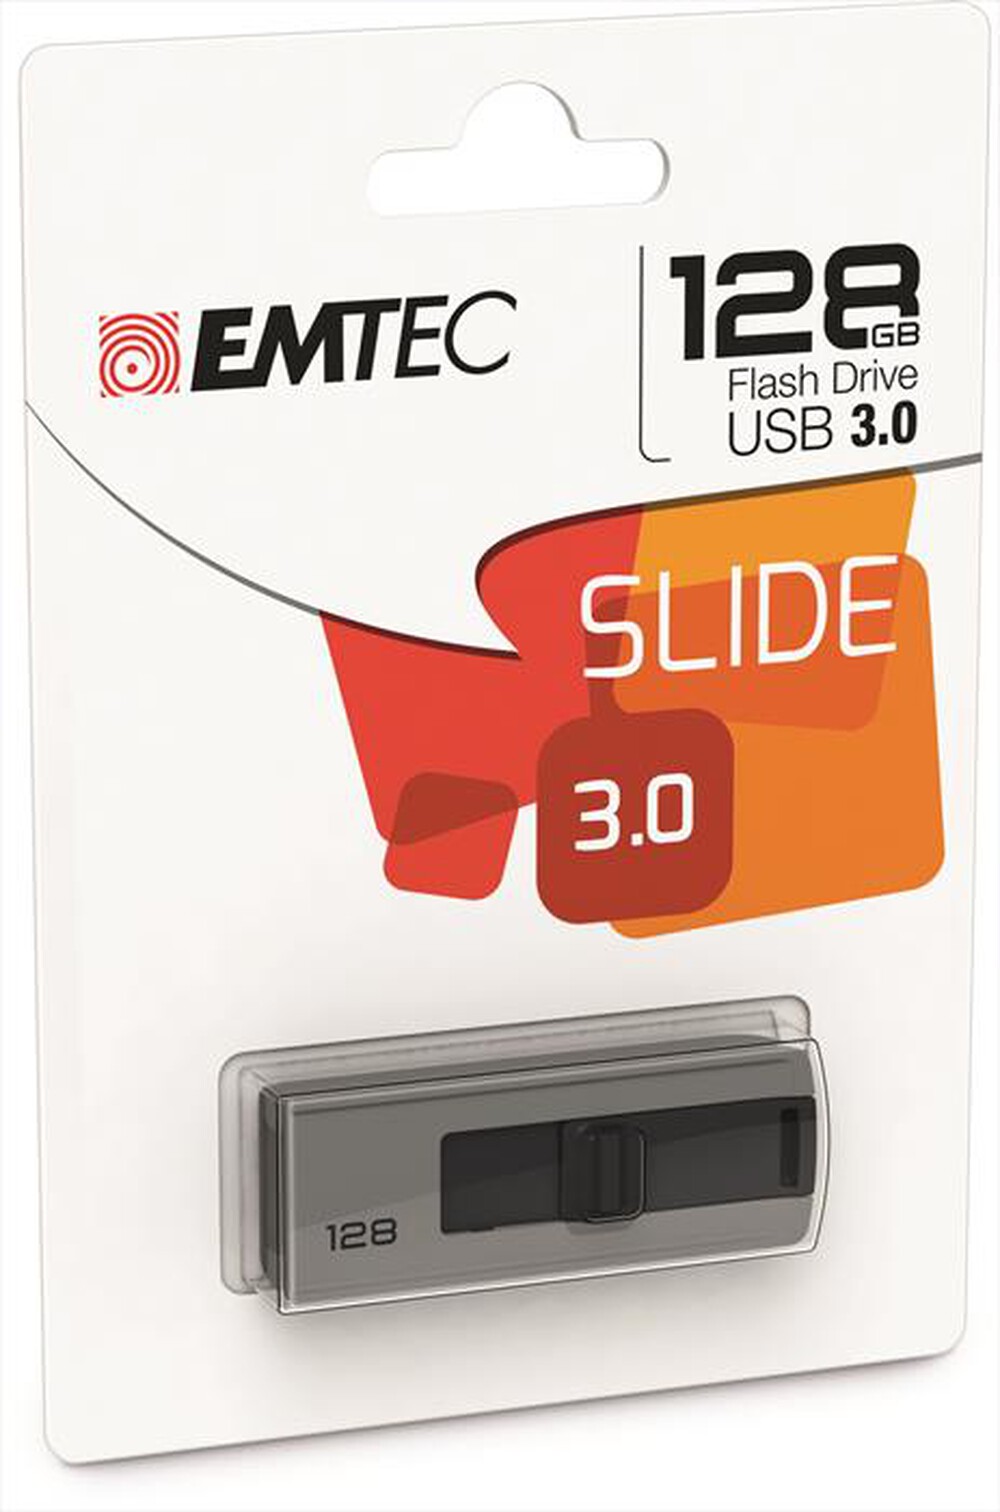 "EMTEC - SLIDE USB 3.0 128GB-GRIGIO/NERO"